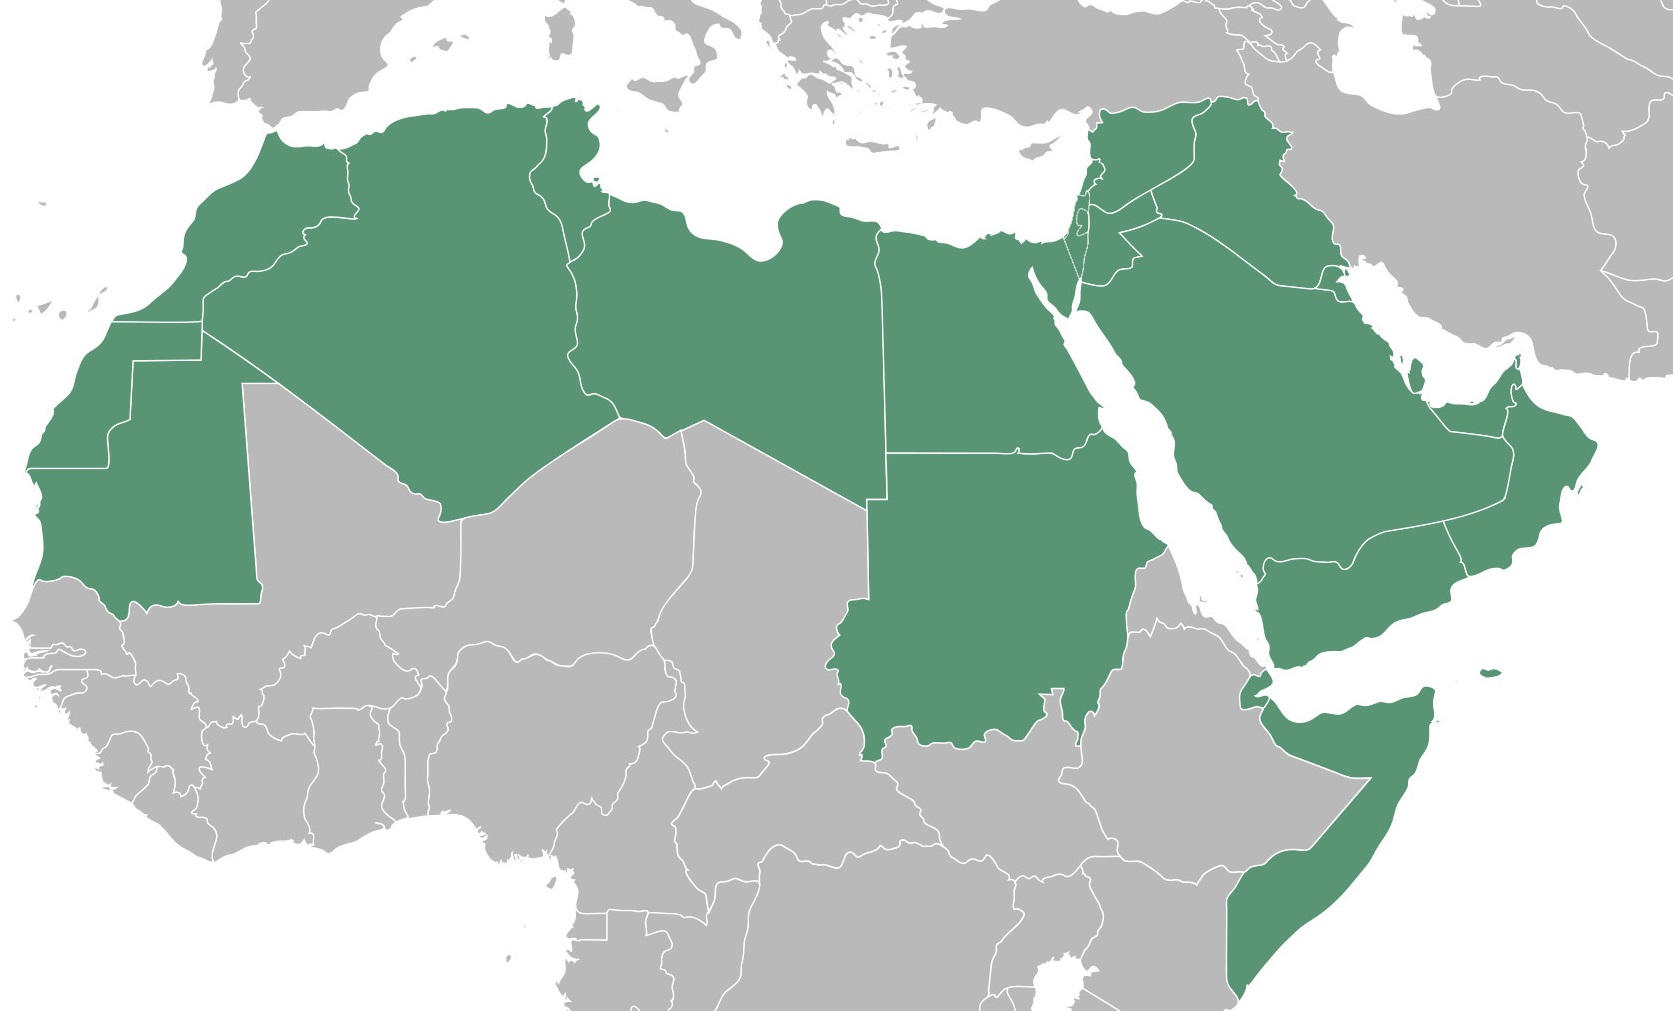 Diplomatic war between Arab countries